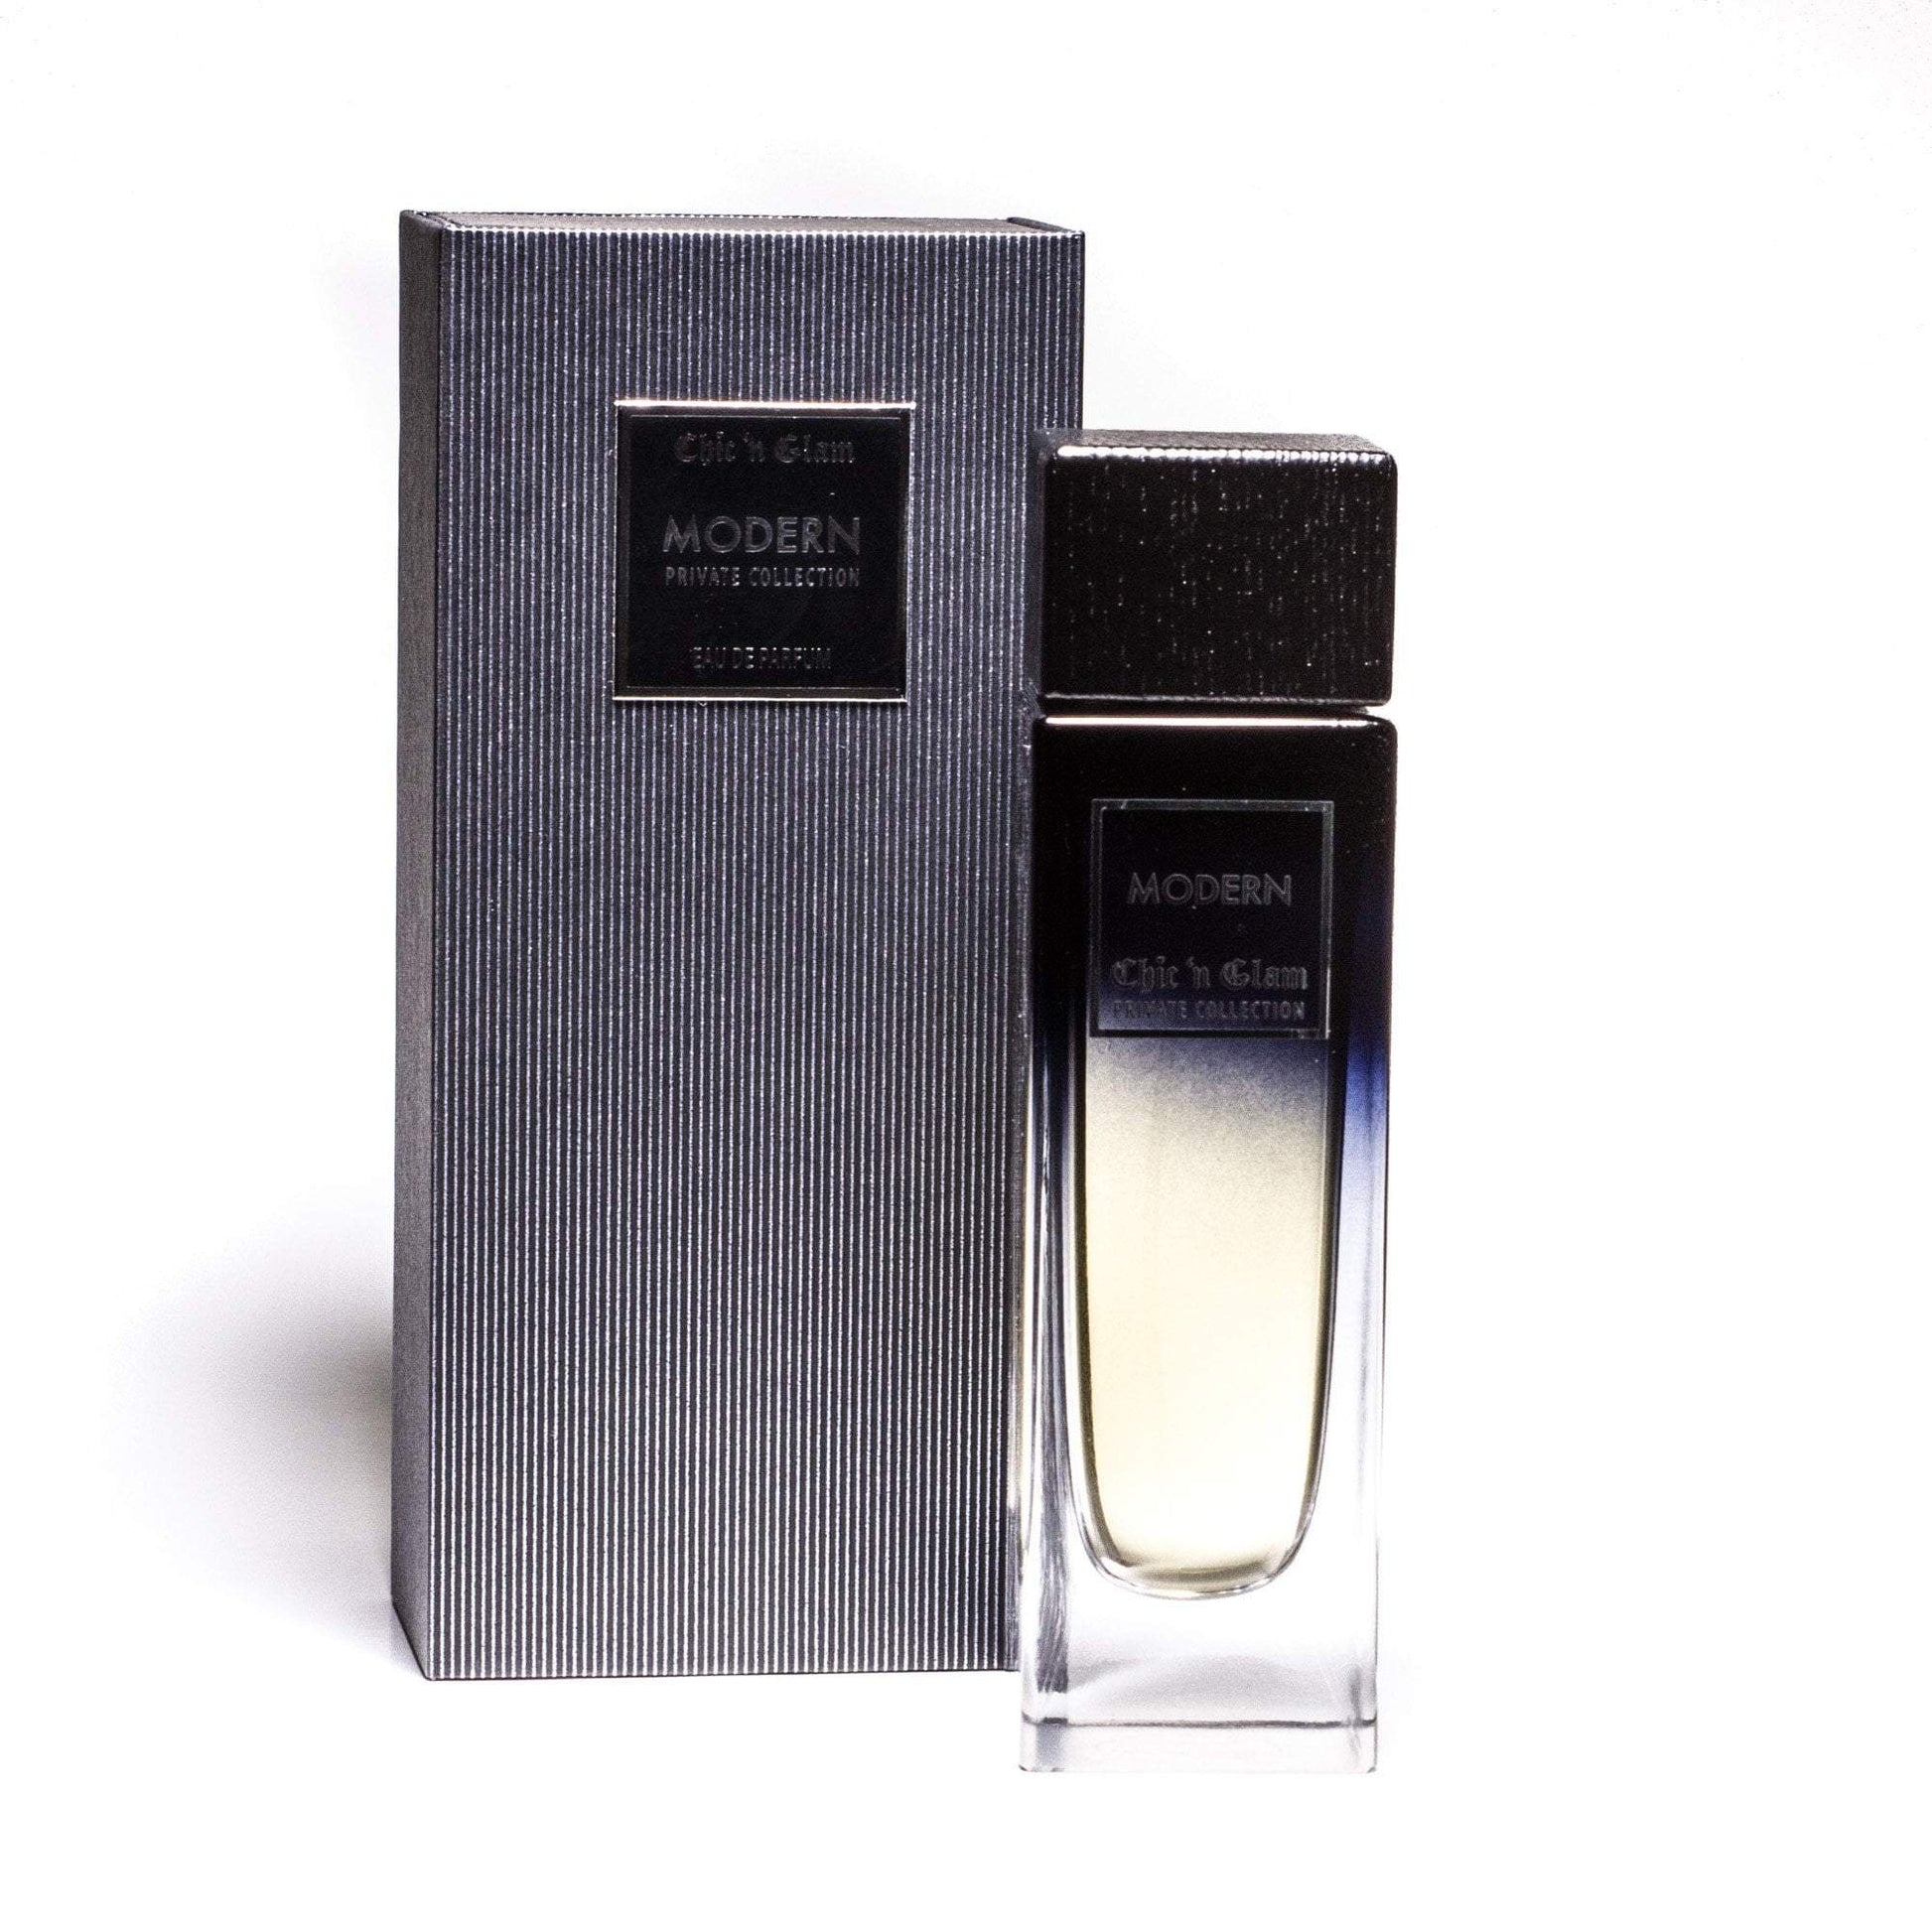 Modern Private Collection Eau de Parfum Spray for Men 3.3 oz. Click to open in modal